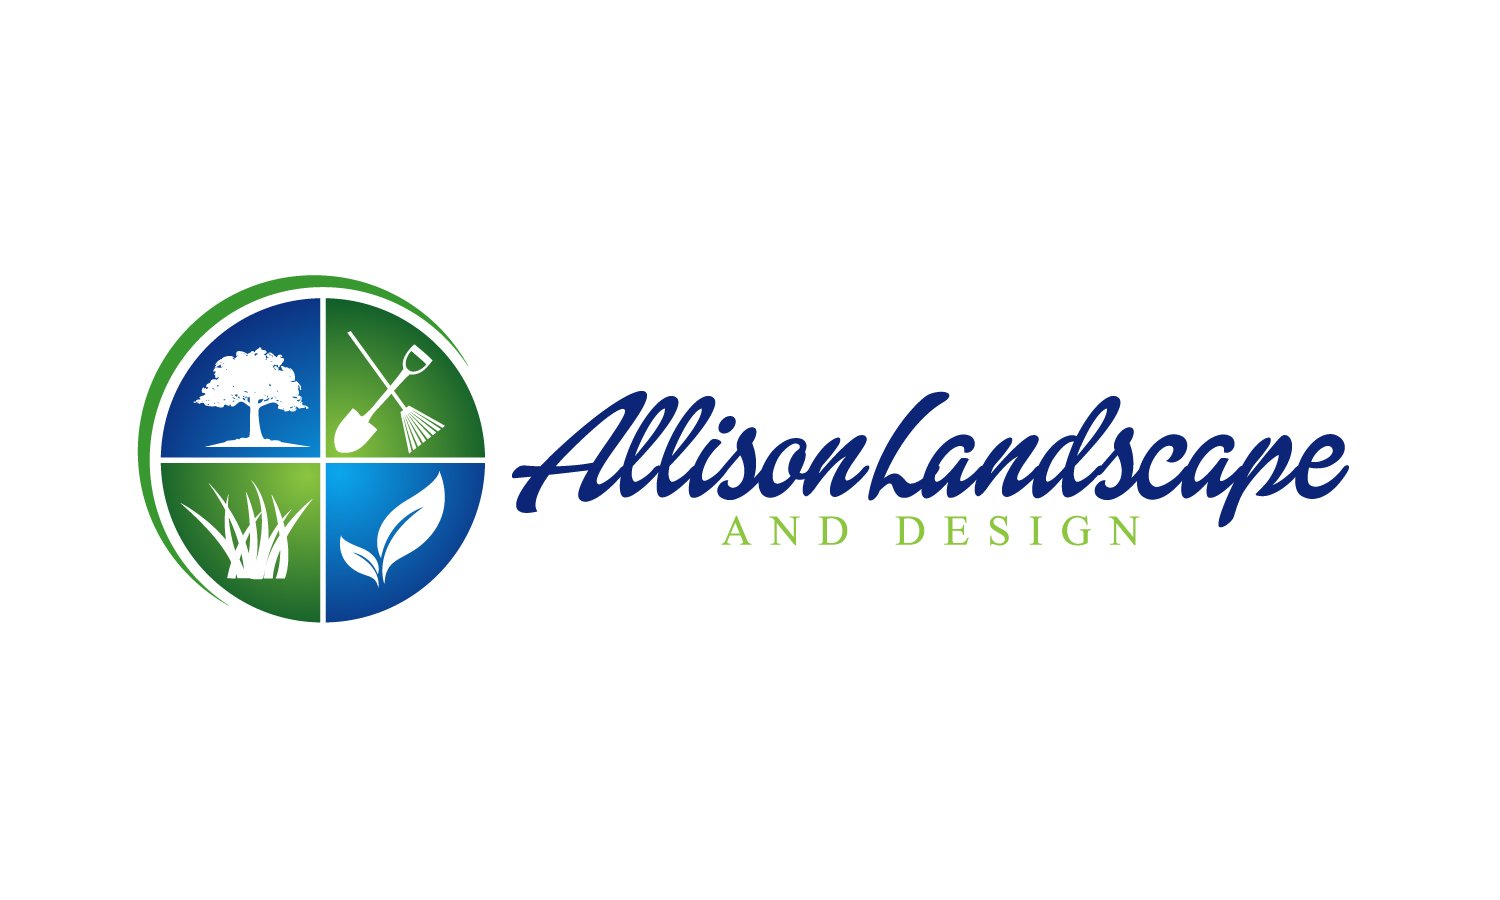 Allison Landscape and Design Logo